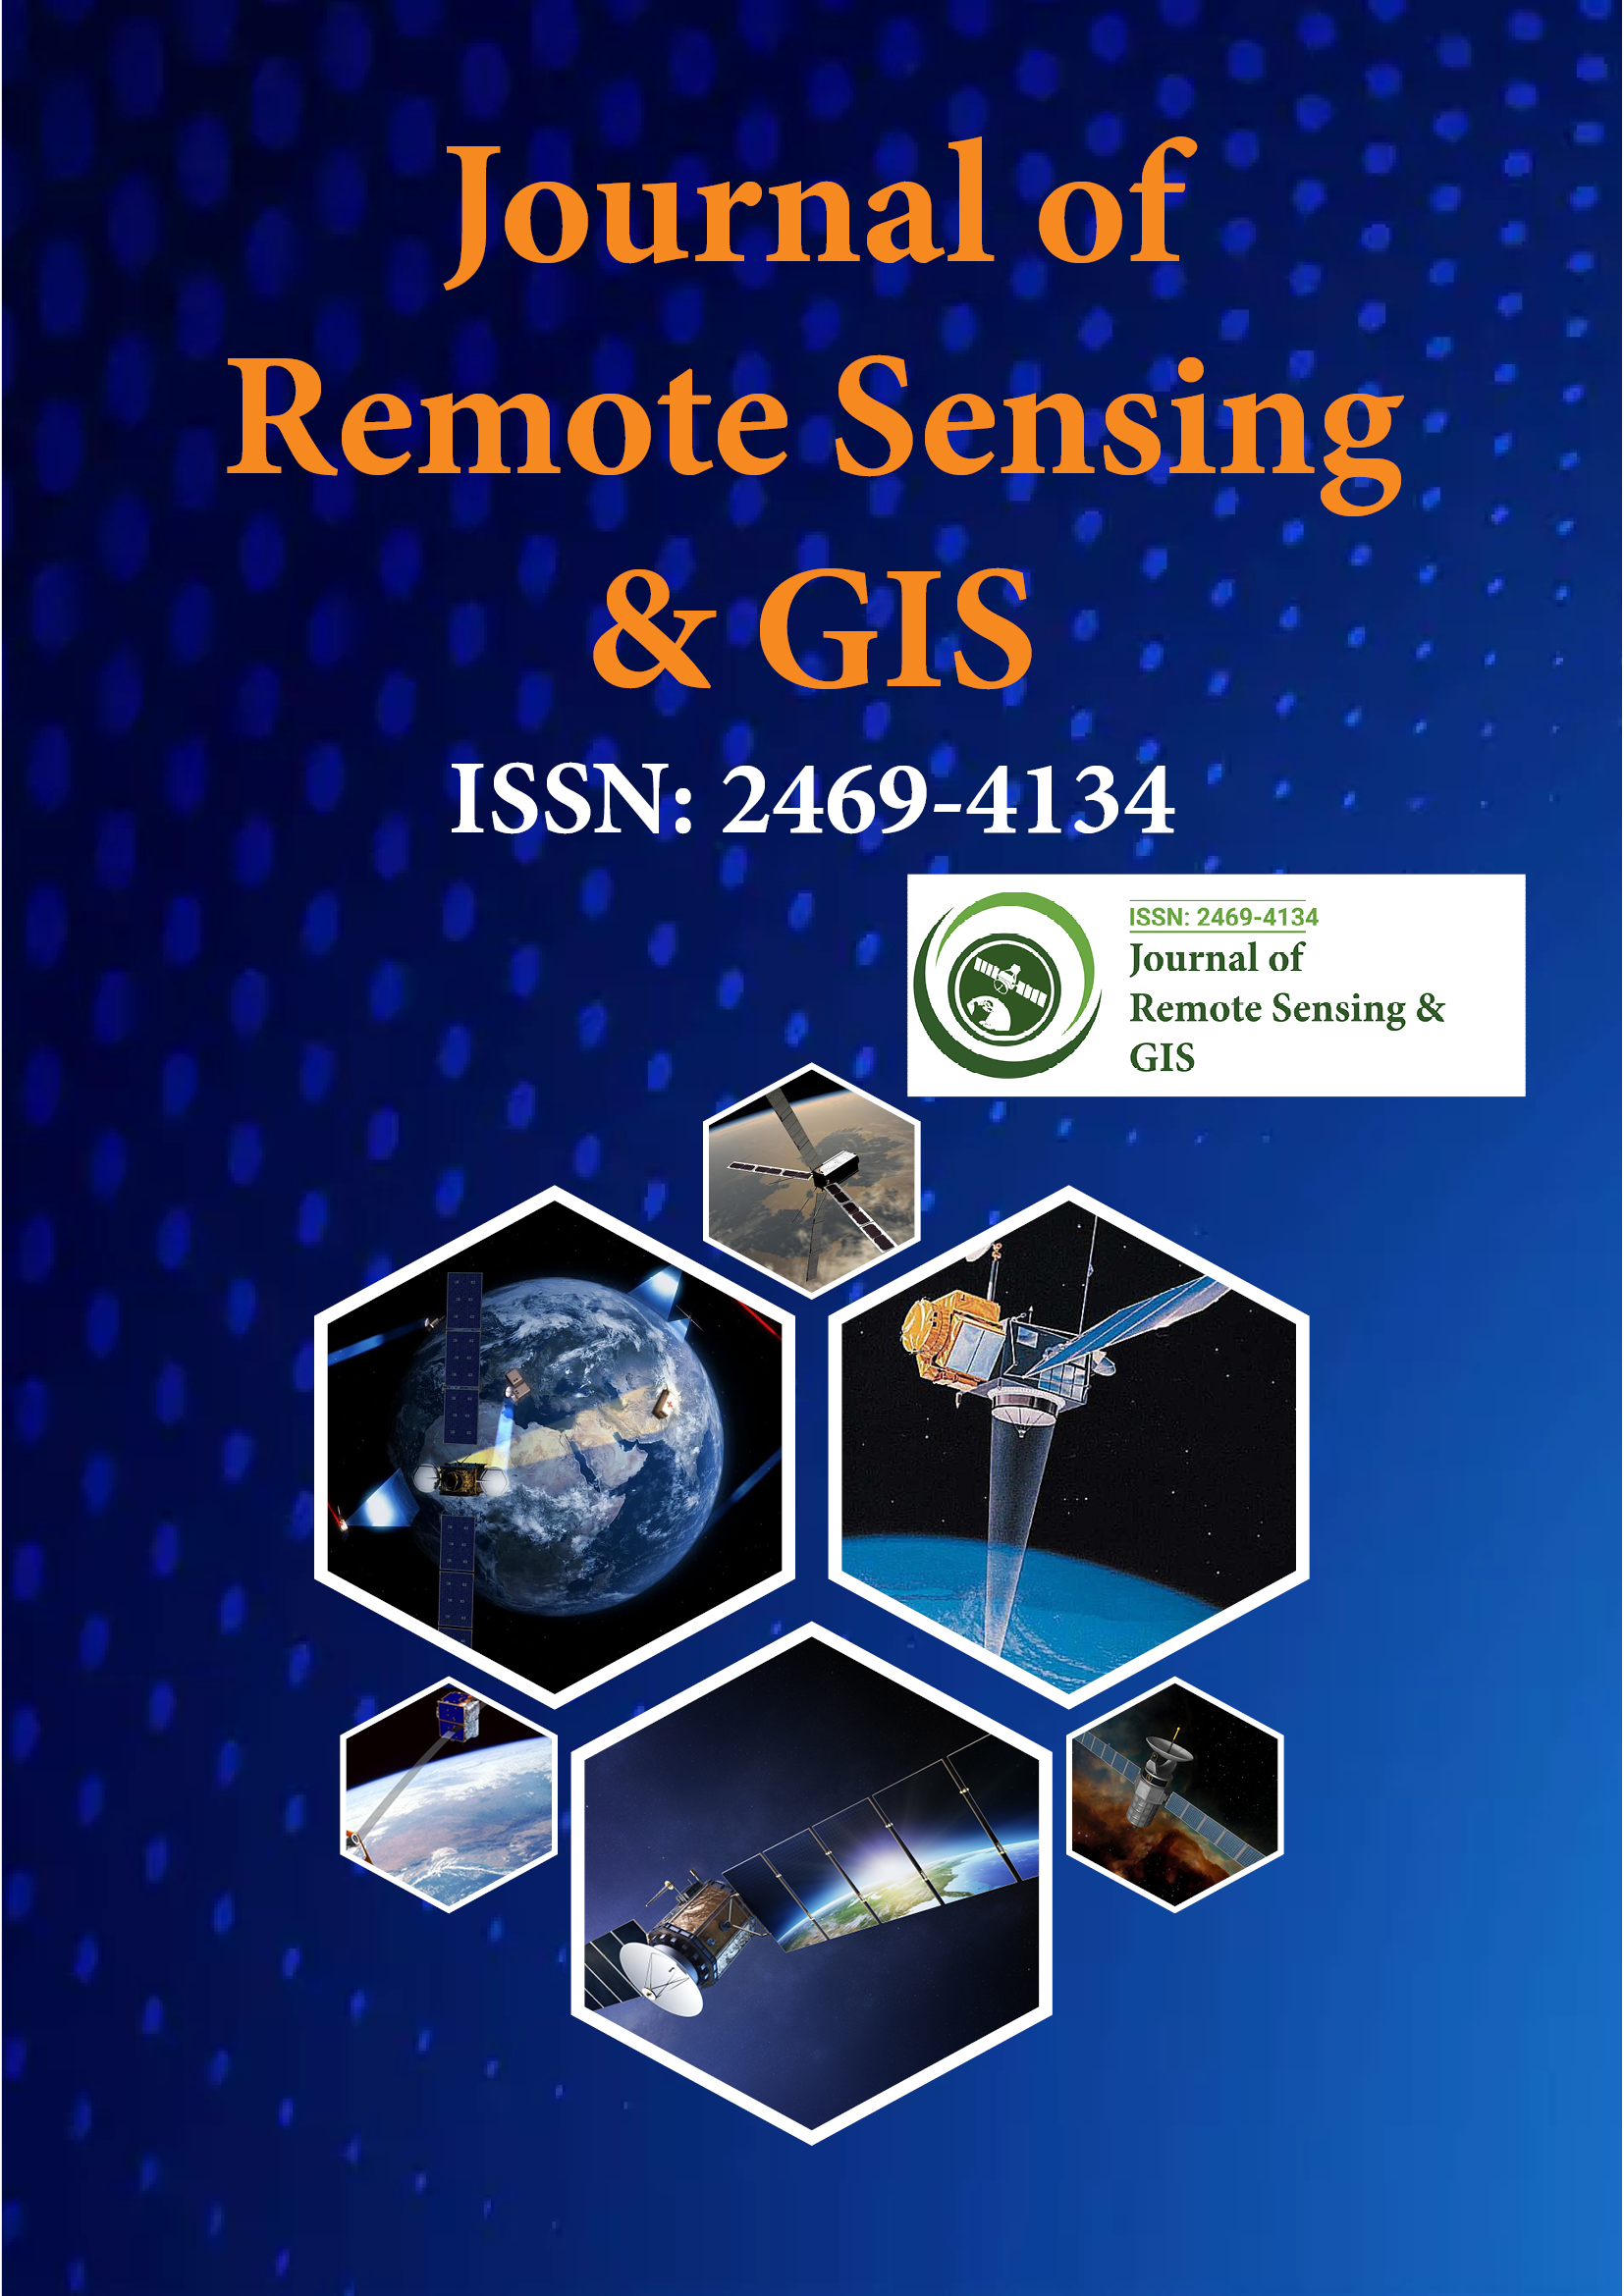 Journal of Remote Sensing & GIS